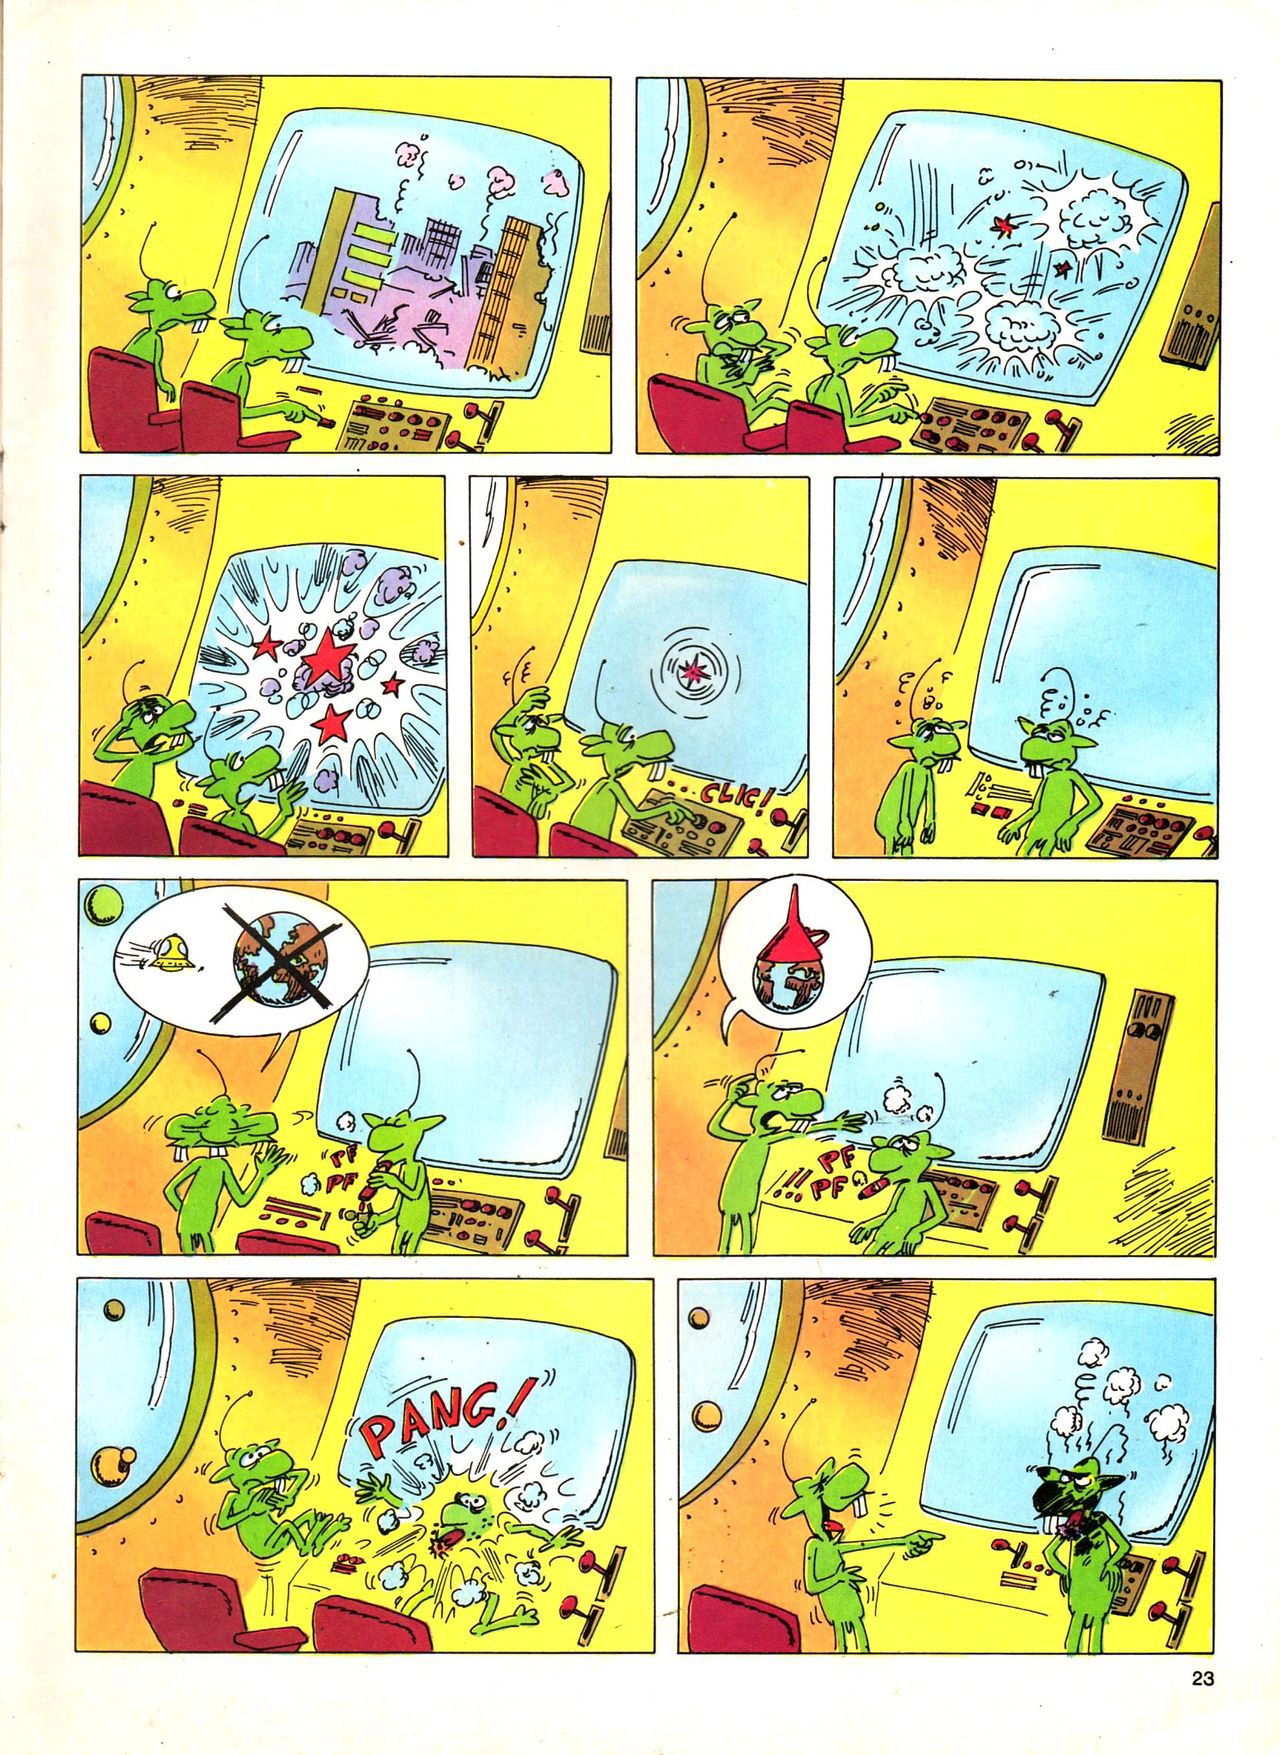 Het Is Groen En Het.. - 04 - Mag Ik Die Ballen.. OH, PARDON! (Dutch) Een oude humoristische serie van Pat Mallet 23